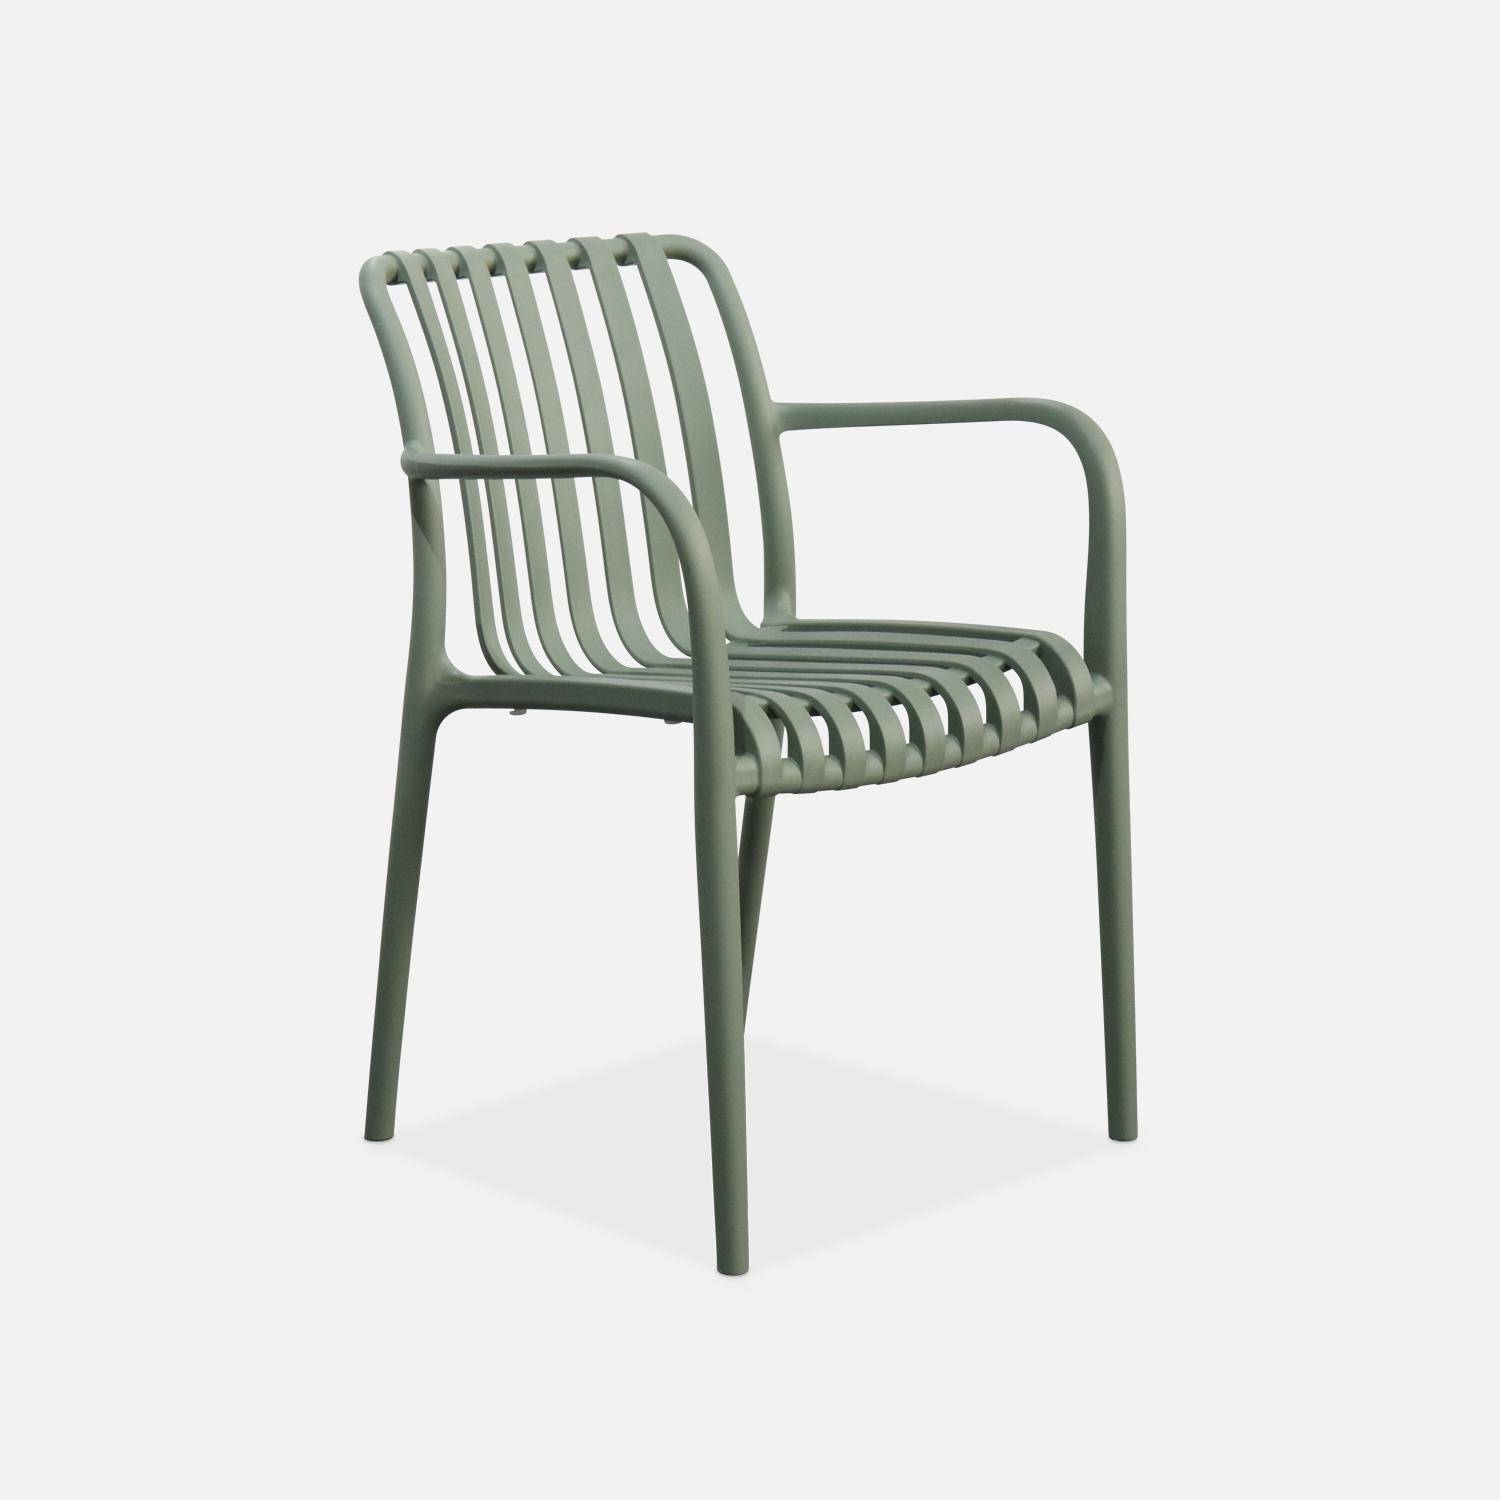 Lot de 4 fauteuils de jardin en plastique vert de gris, empilables, design linéaire ,sweeek,Photo2